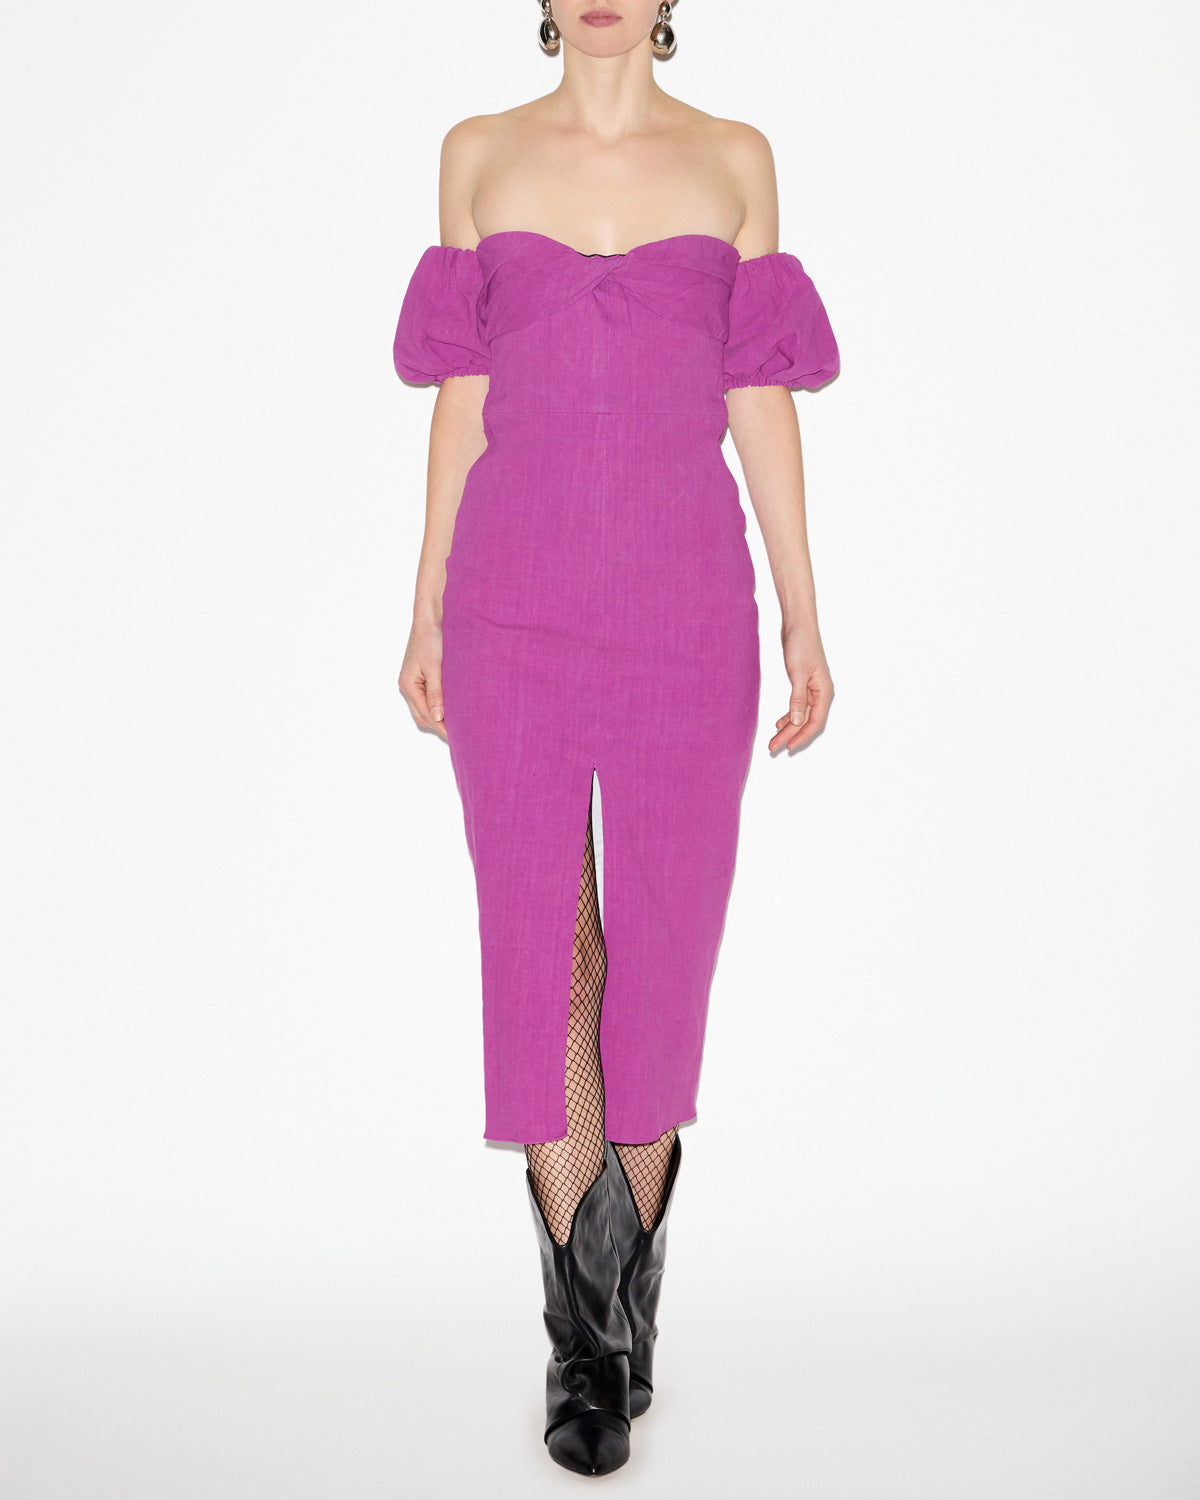 Darlena dress Woman Purple 2